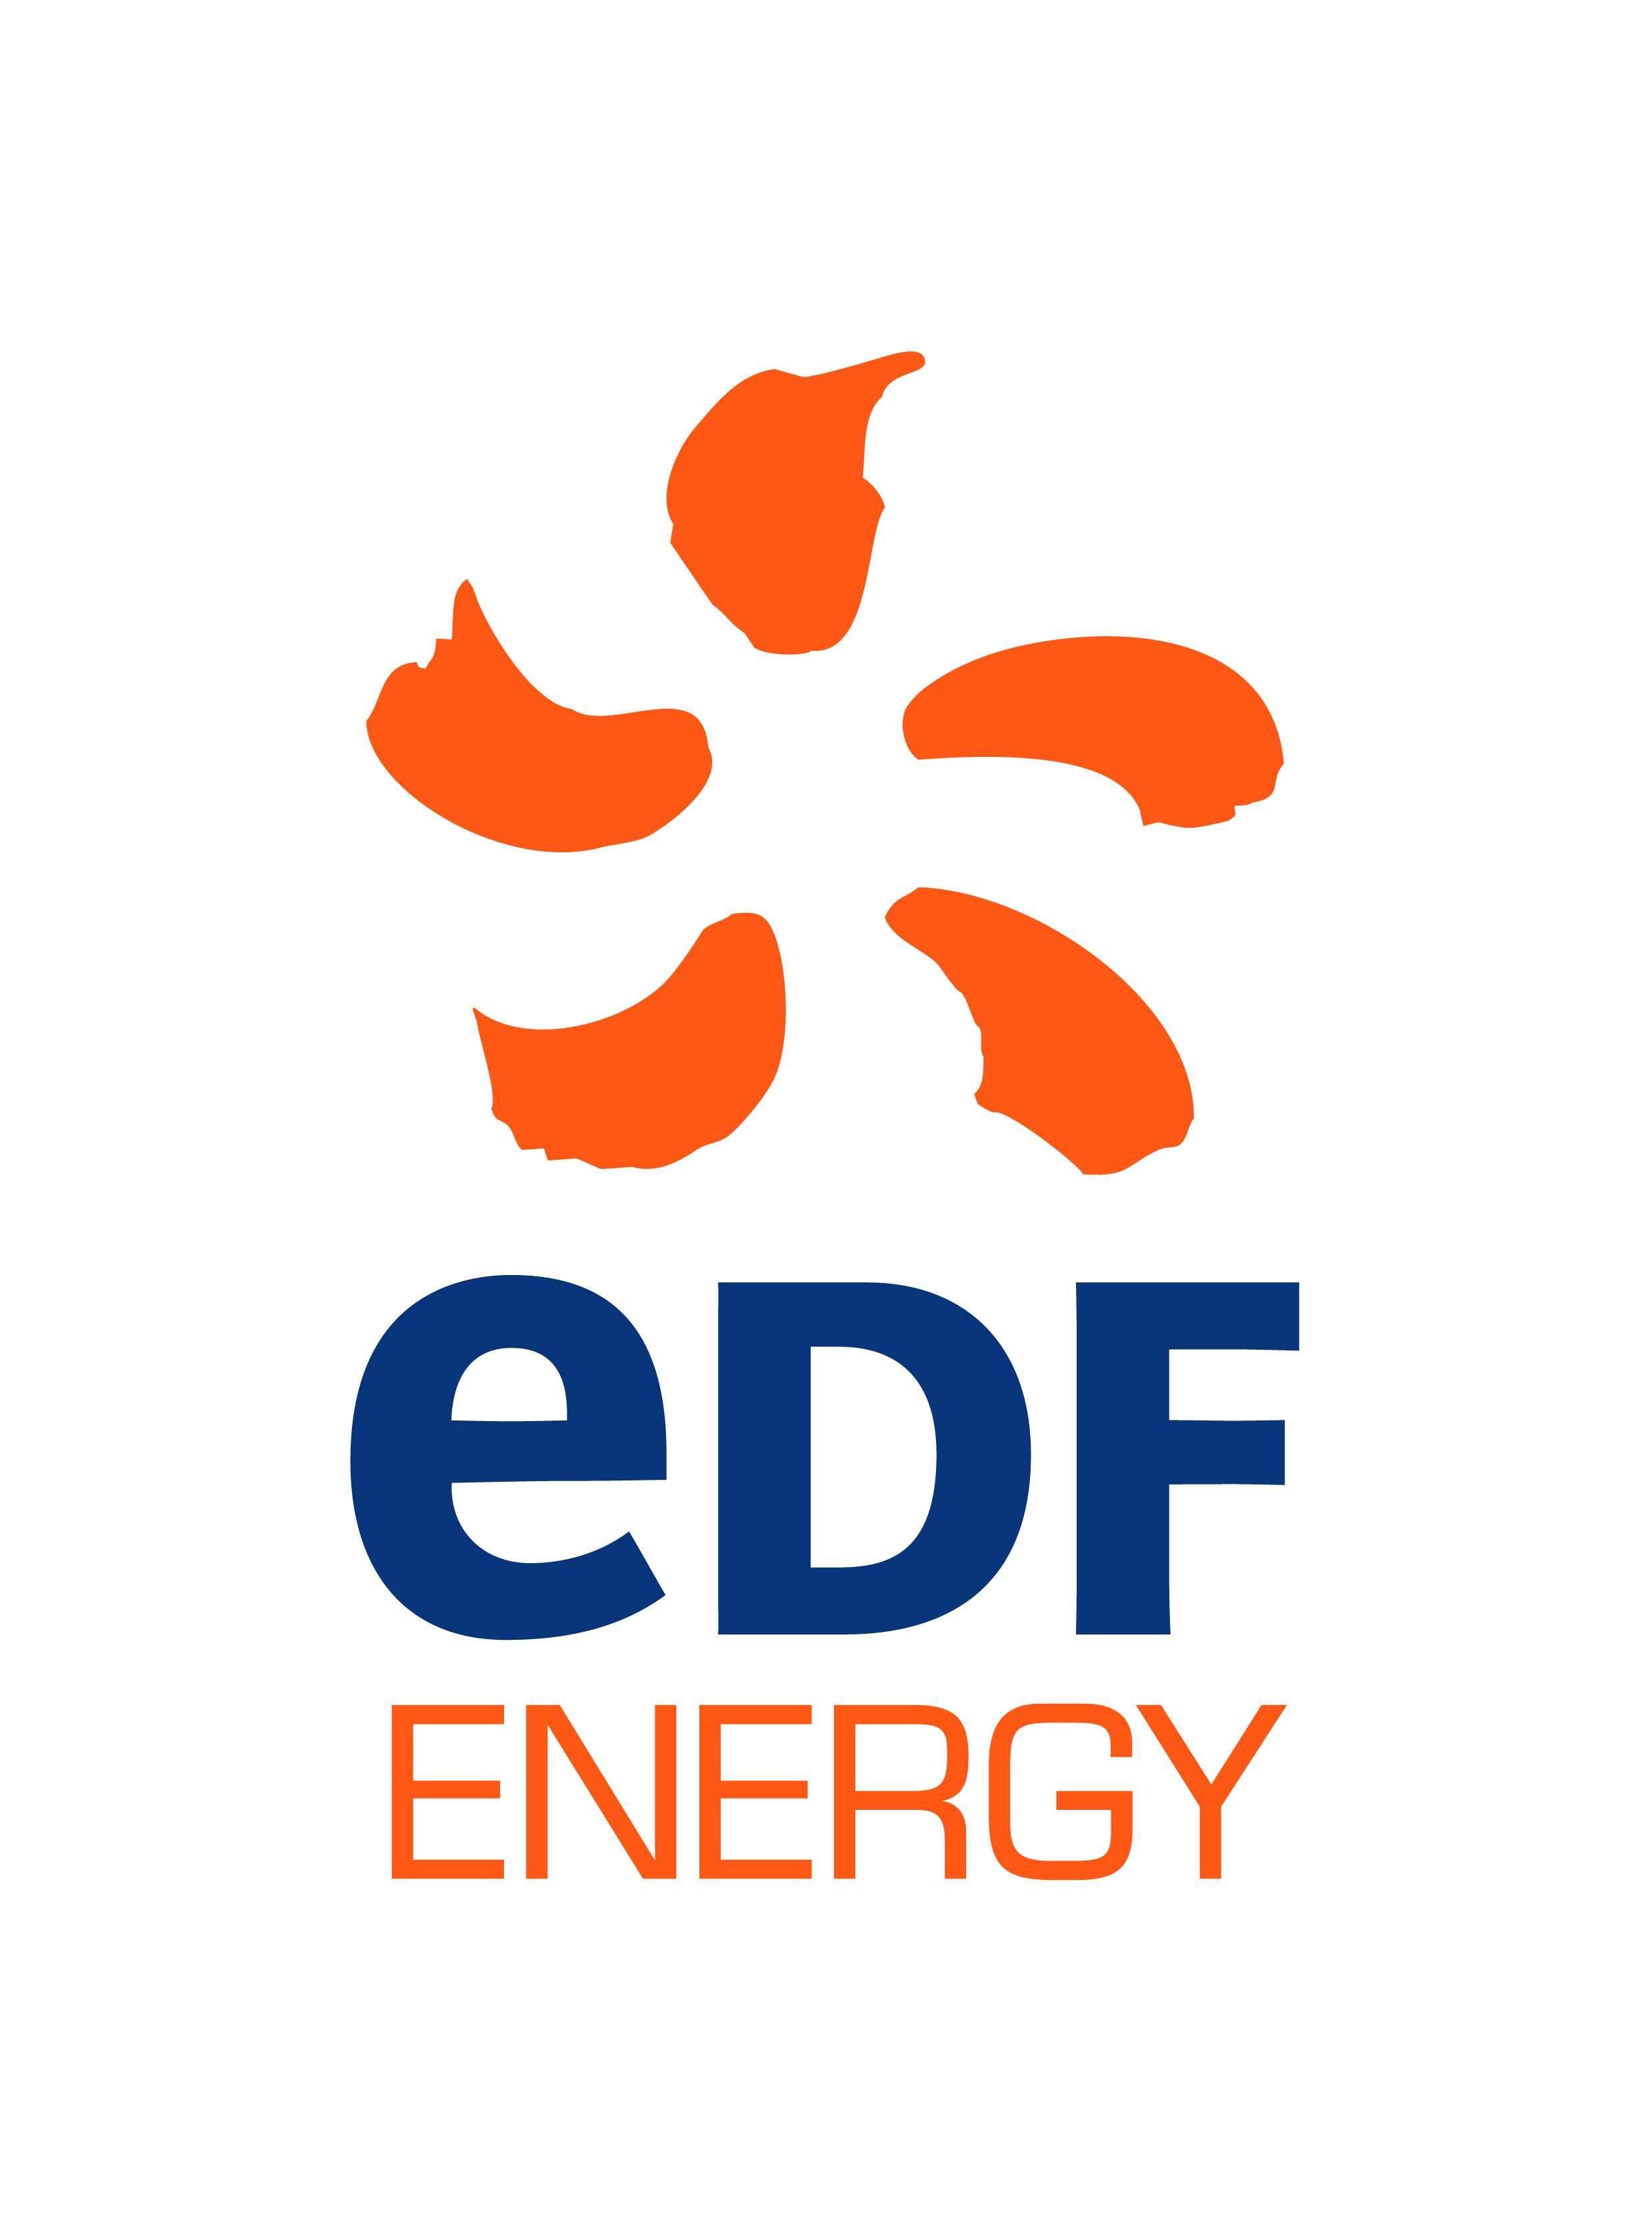 Jpeg Logo - EDF Energy logo JPEG - BQF | BQF